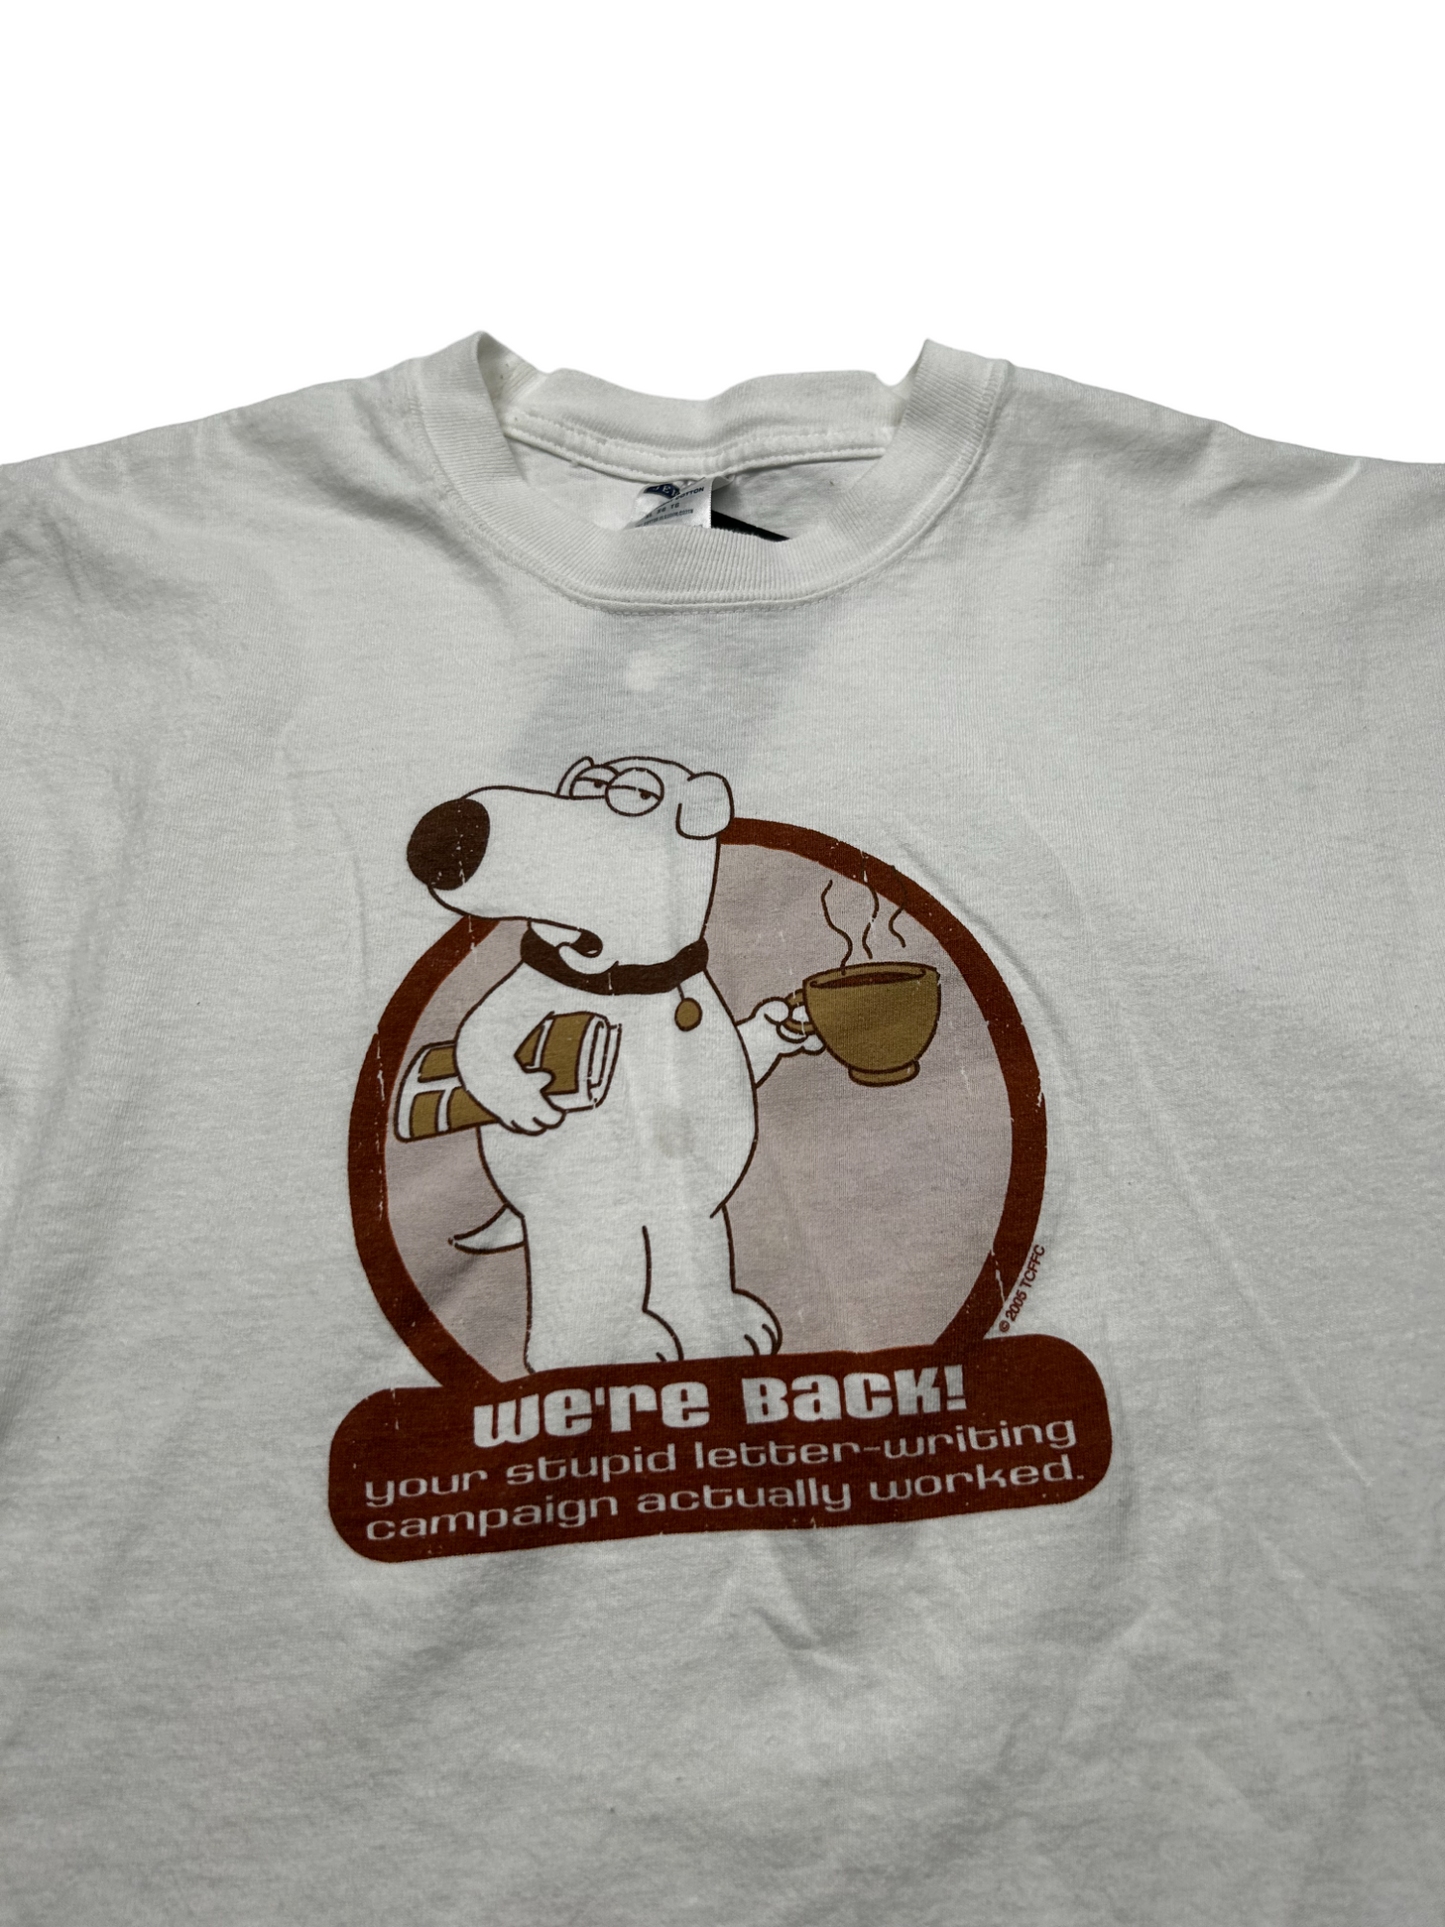 Family Guy T-Shirt